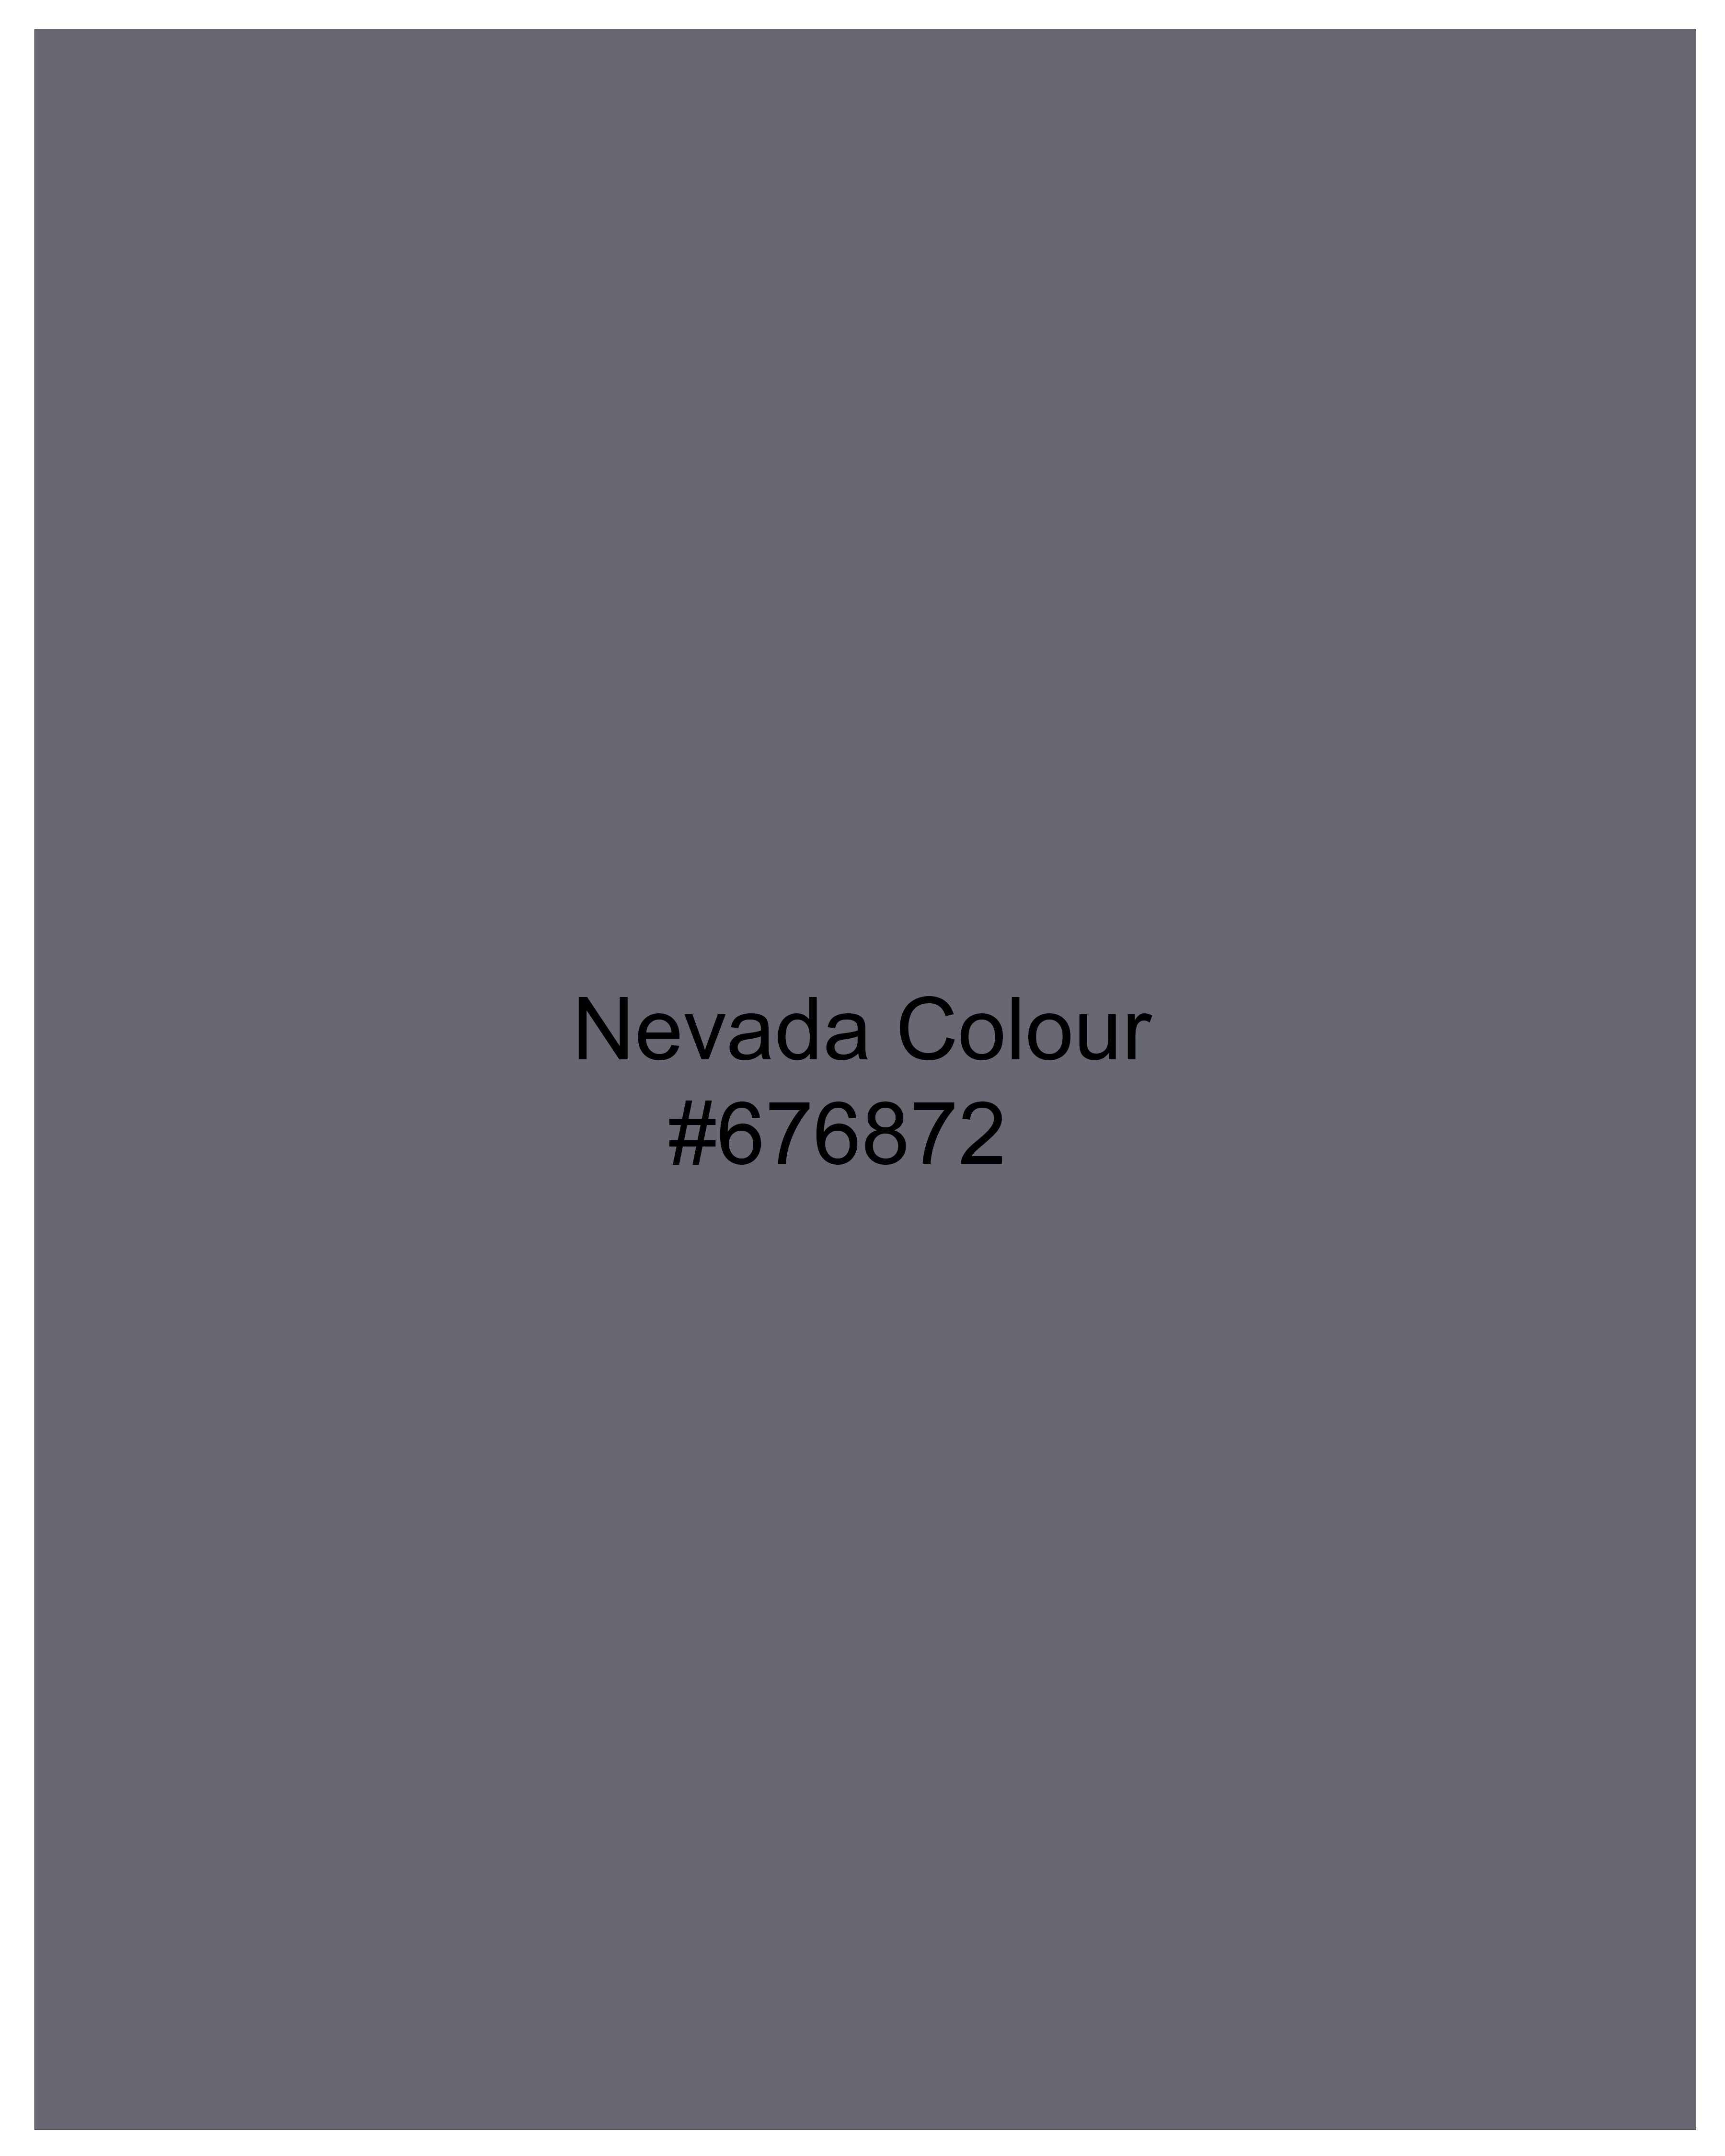 Nevada Gray Luxurious Linen Shirt 9820-BLK-38, 9820-BLK-H-38, 9820-BLK-39, 9820-BLK-H-39, 9820-BLK-40, 9820-BLK-H-40, 9820-BLK-42, 9820-BLK-H-42, 9820-BLK-44, 9820-BLK-H-44, 9820-BLK-46, 9820-BLK-H-46, 9820-BLK-48, 9820-BLK-H-48, 9820-BLK-50, 9820-BLK-H-50, 9820-BLK-52, 9820-BLK-H-52